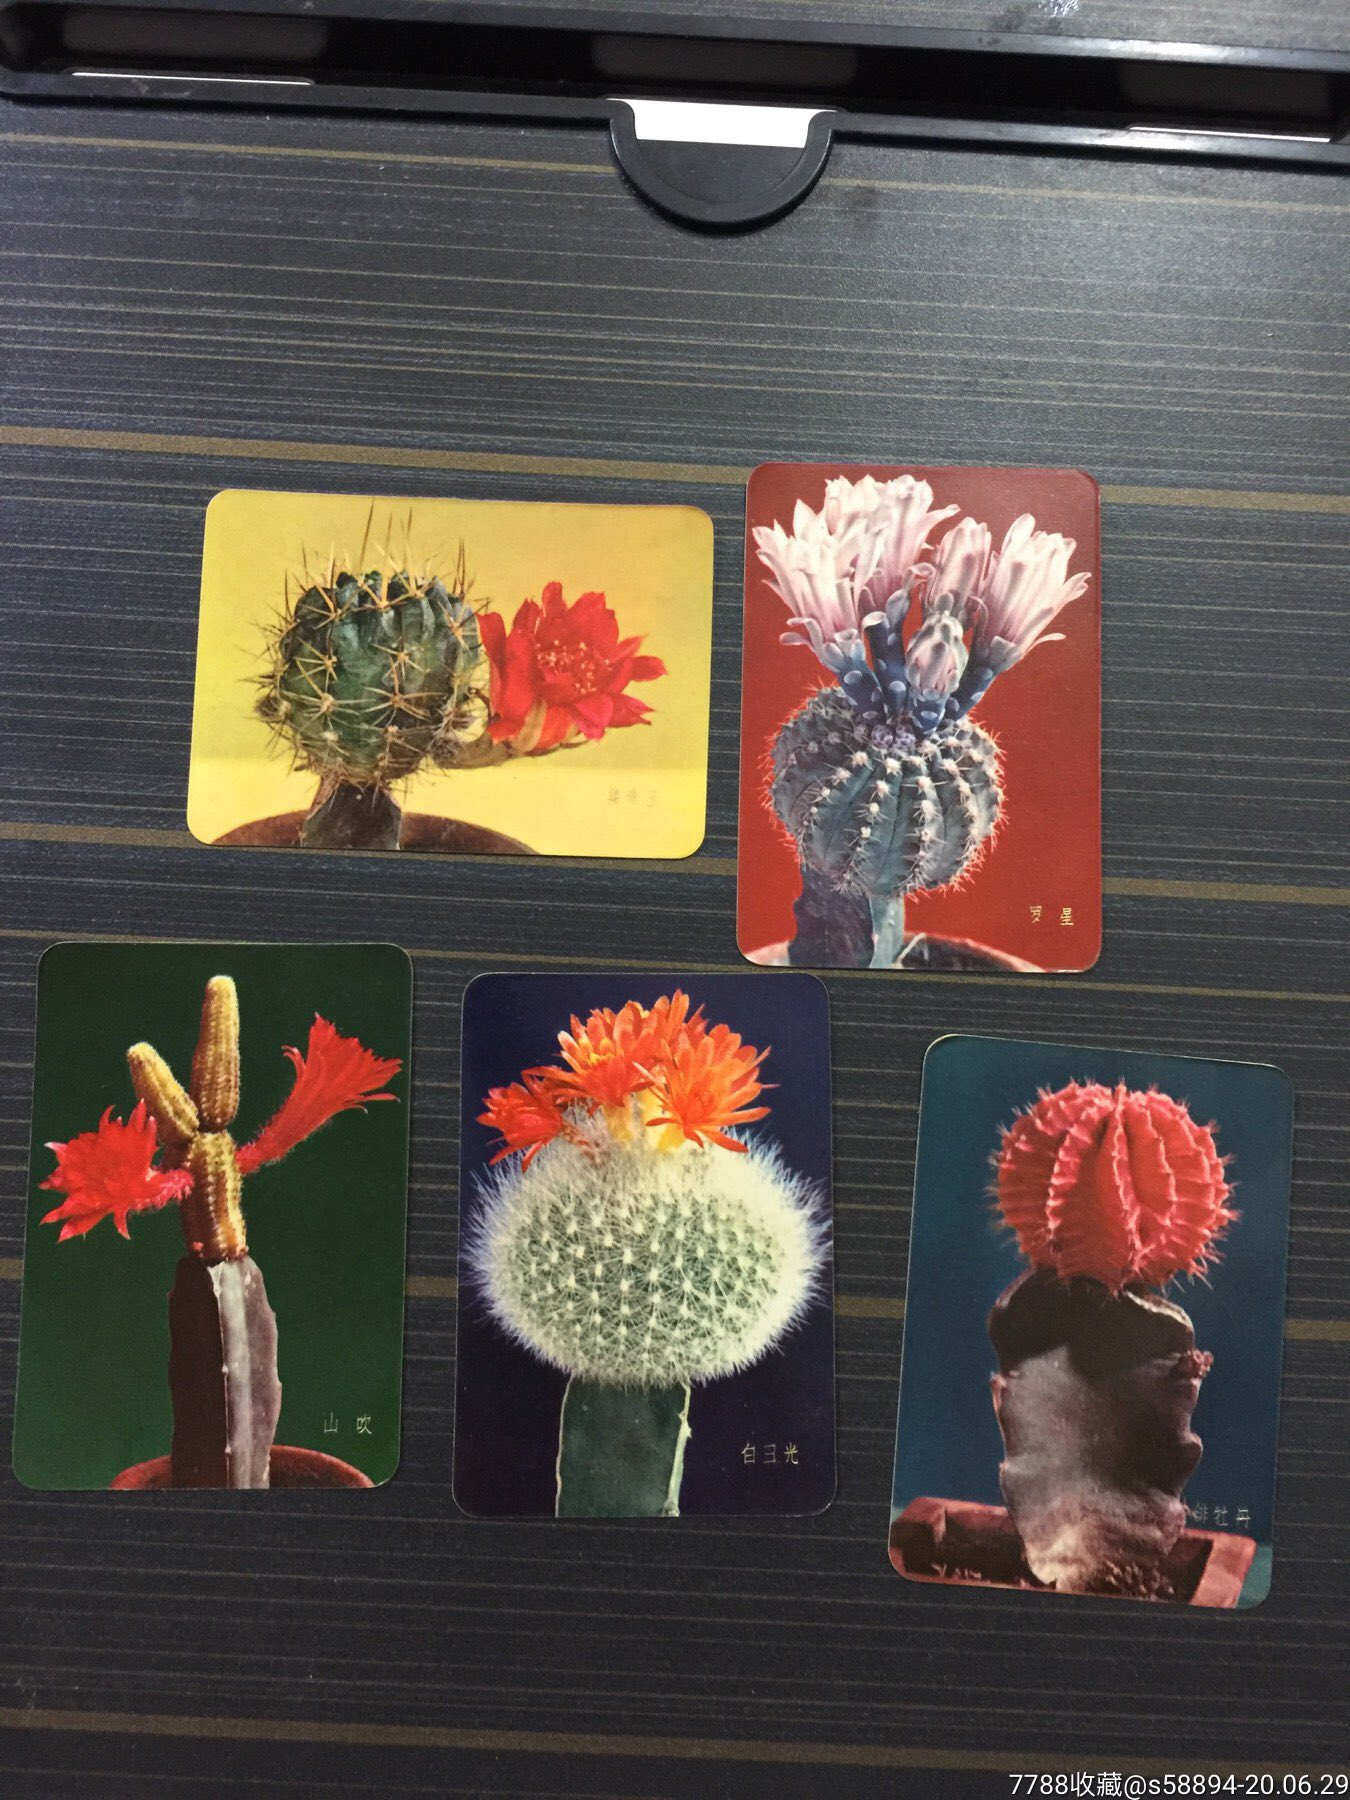 仙人掌的植物记录卡图片